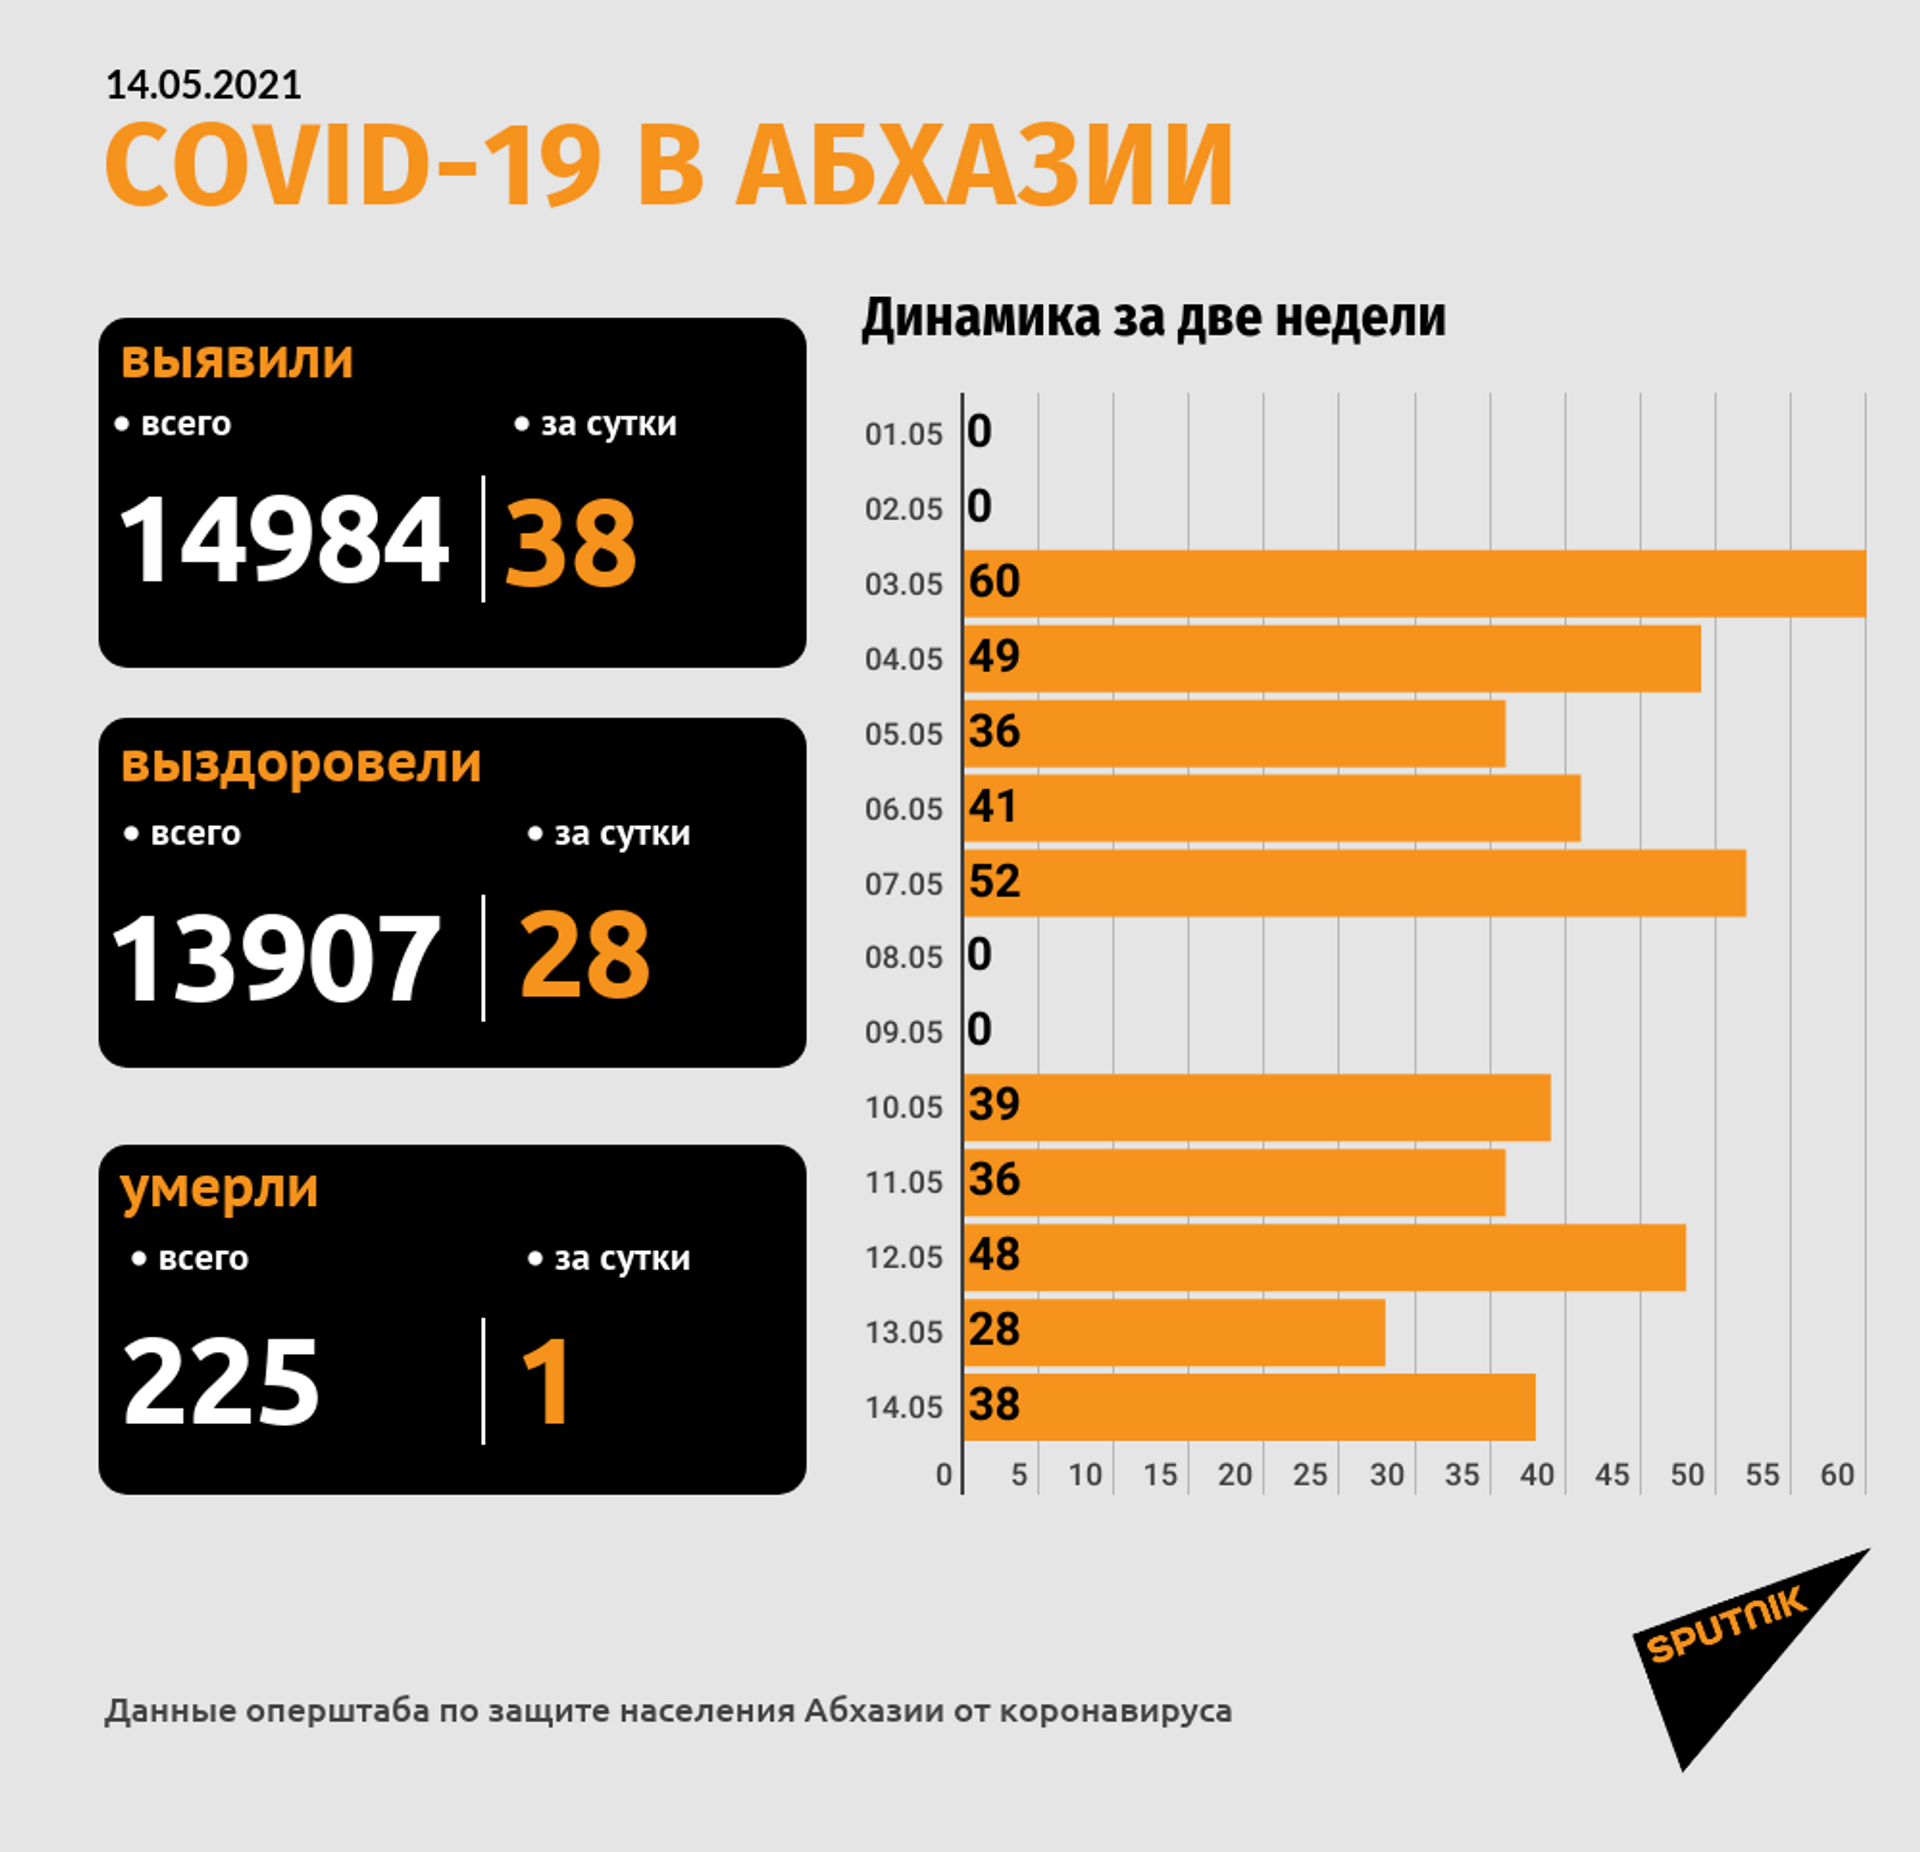 Число смертей от COVID-19 в Абхазии достигло 225 - Sputnik Абхазия, 1920, 14.05.2021